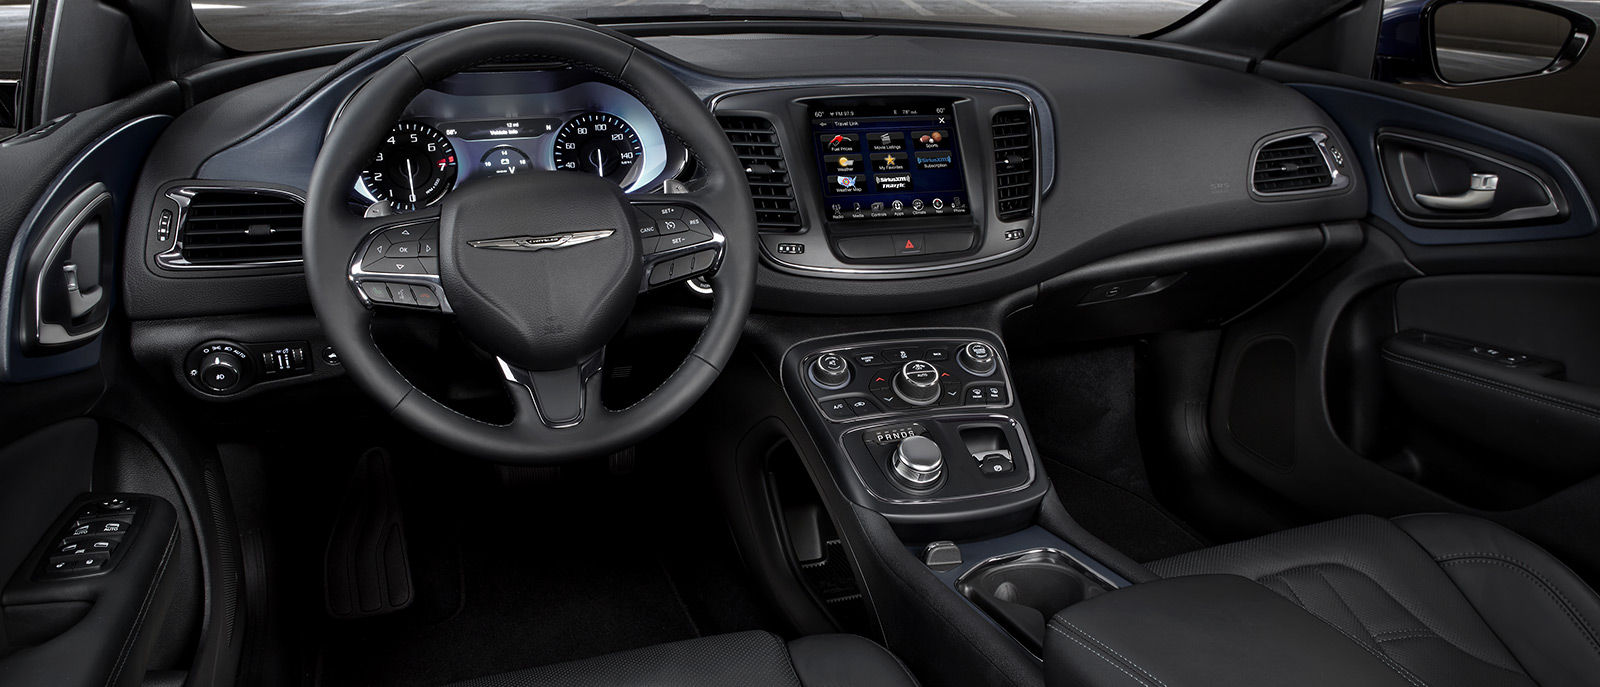 2016 Chrysler 200 Interior